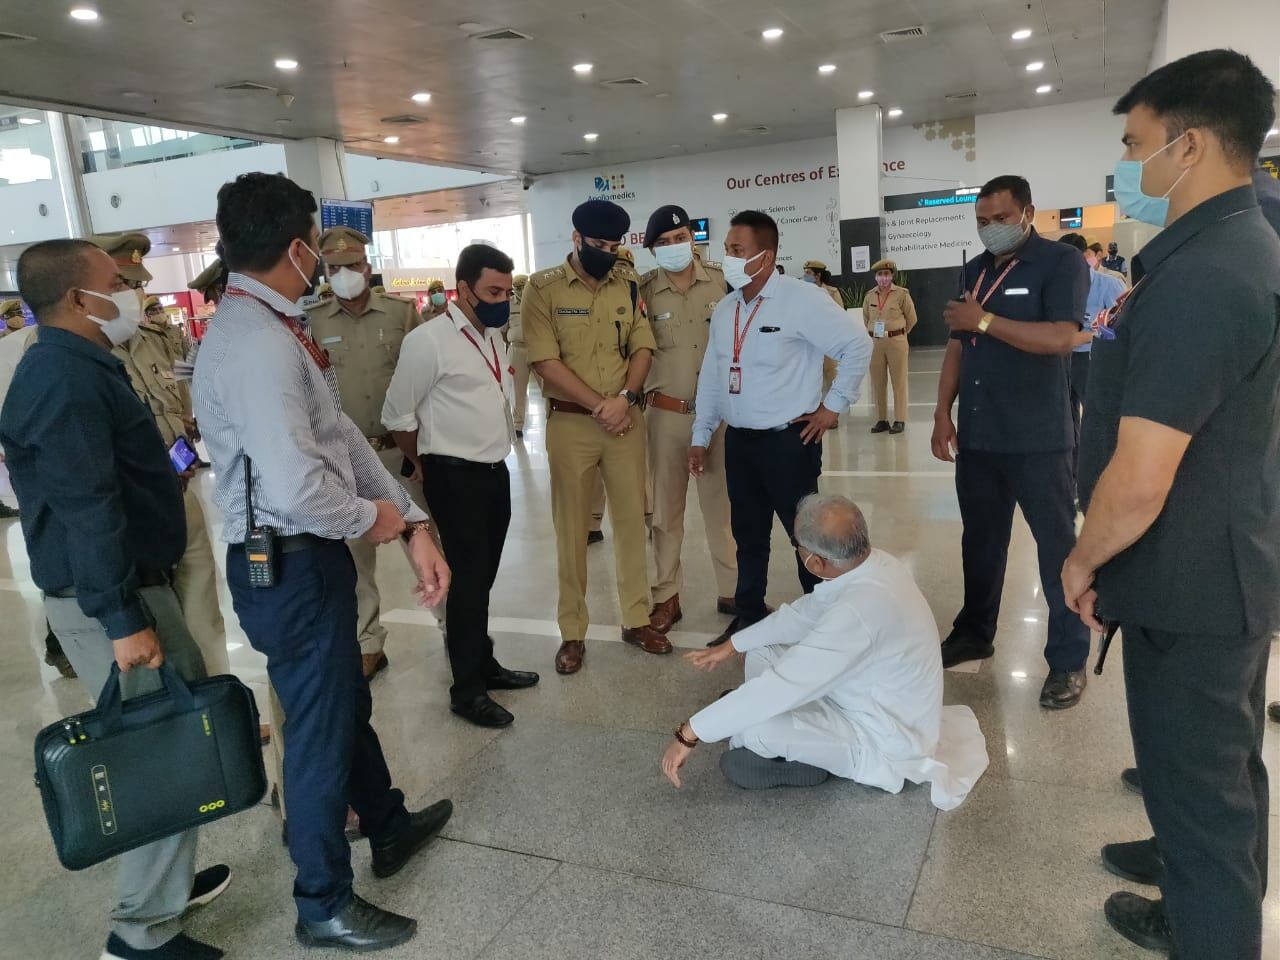 लखनऊ एयरपोर्ट पर जमीन पर बैठे भूपेश बघेल, कहा- मैं लखीमपुर नहीं जा रहा फिर भी मुझे क्यों रोका जा रहा